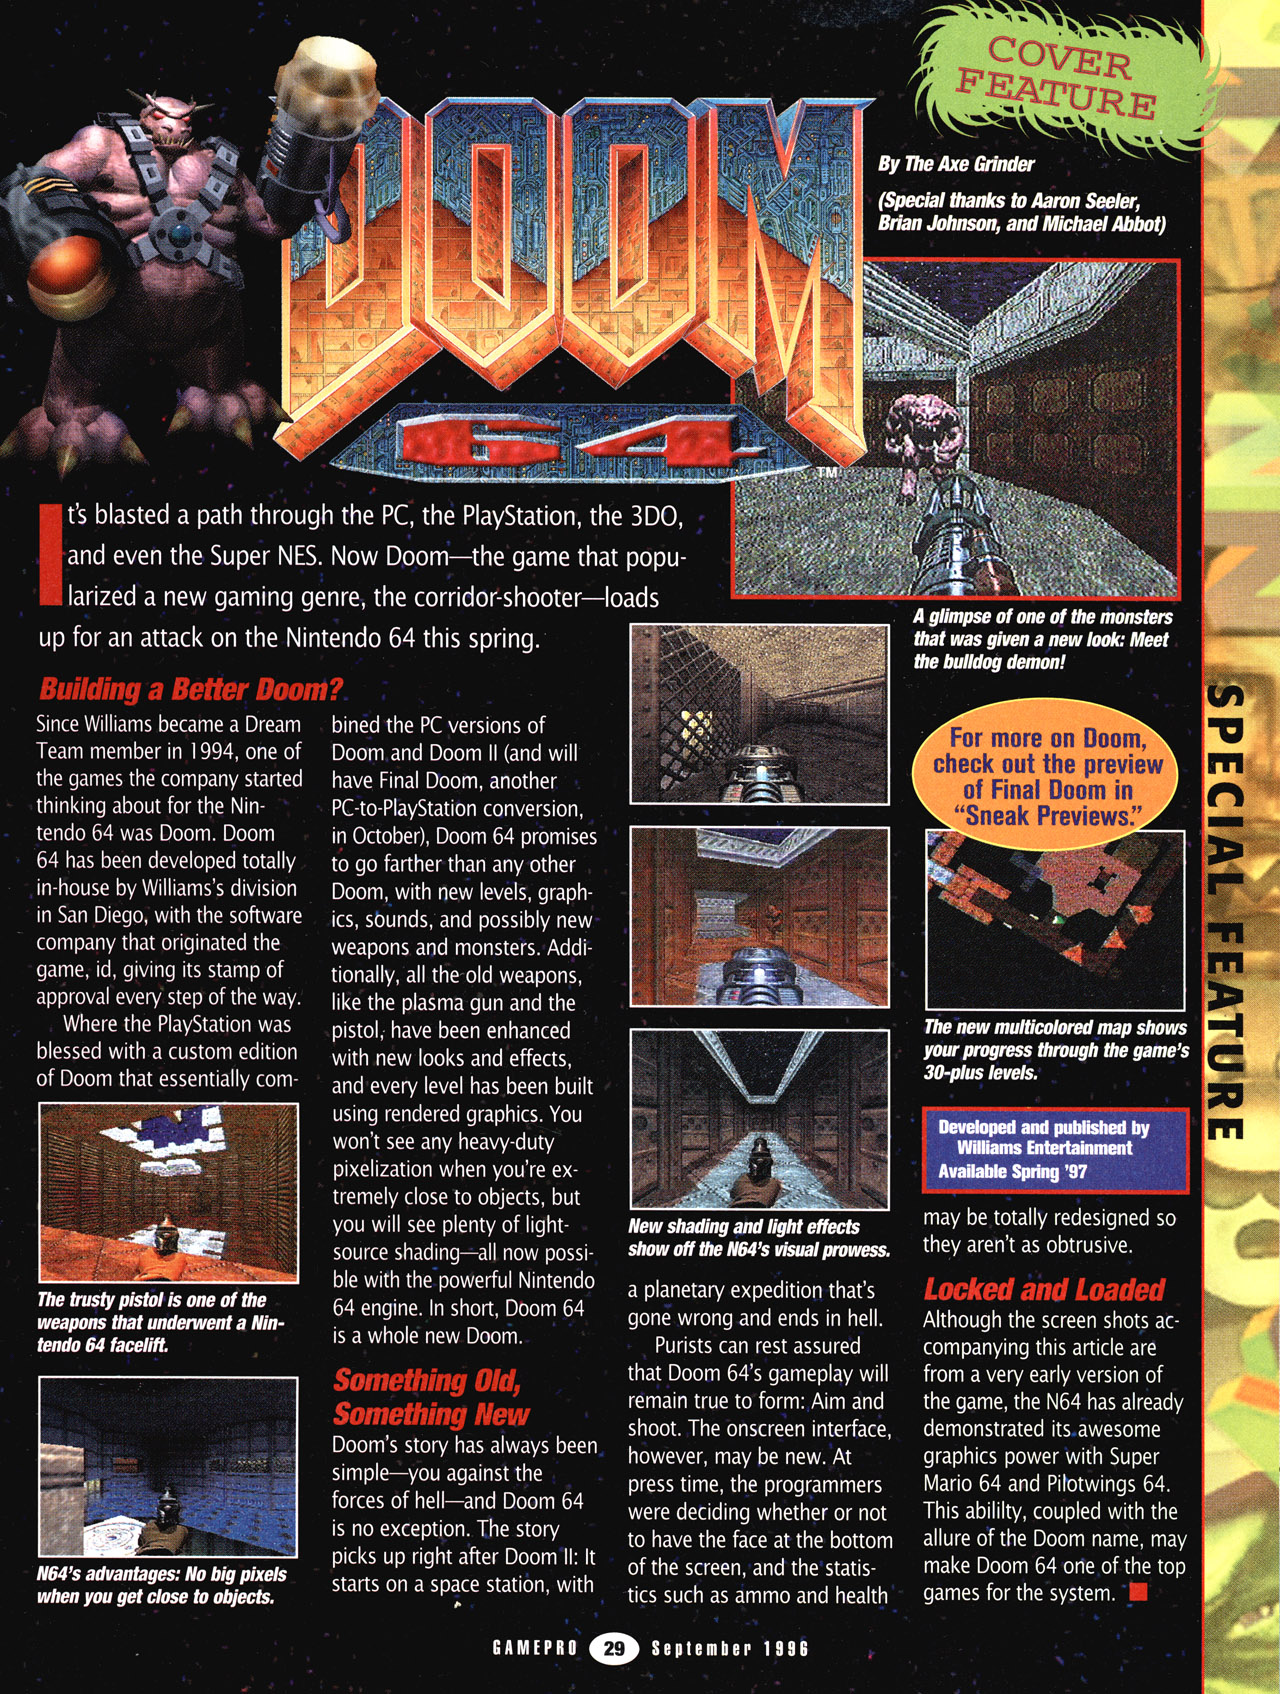 Doom 64 Backgrounds on Wallpapers Vista